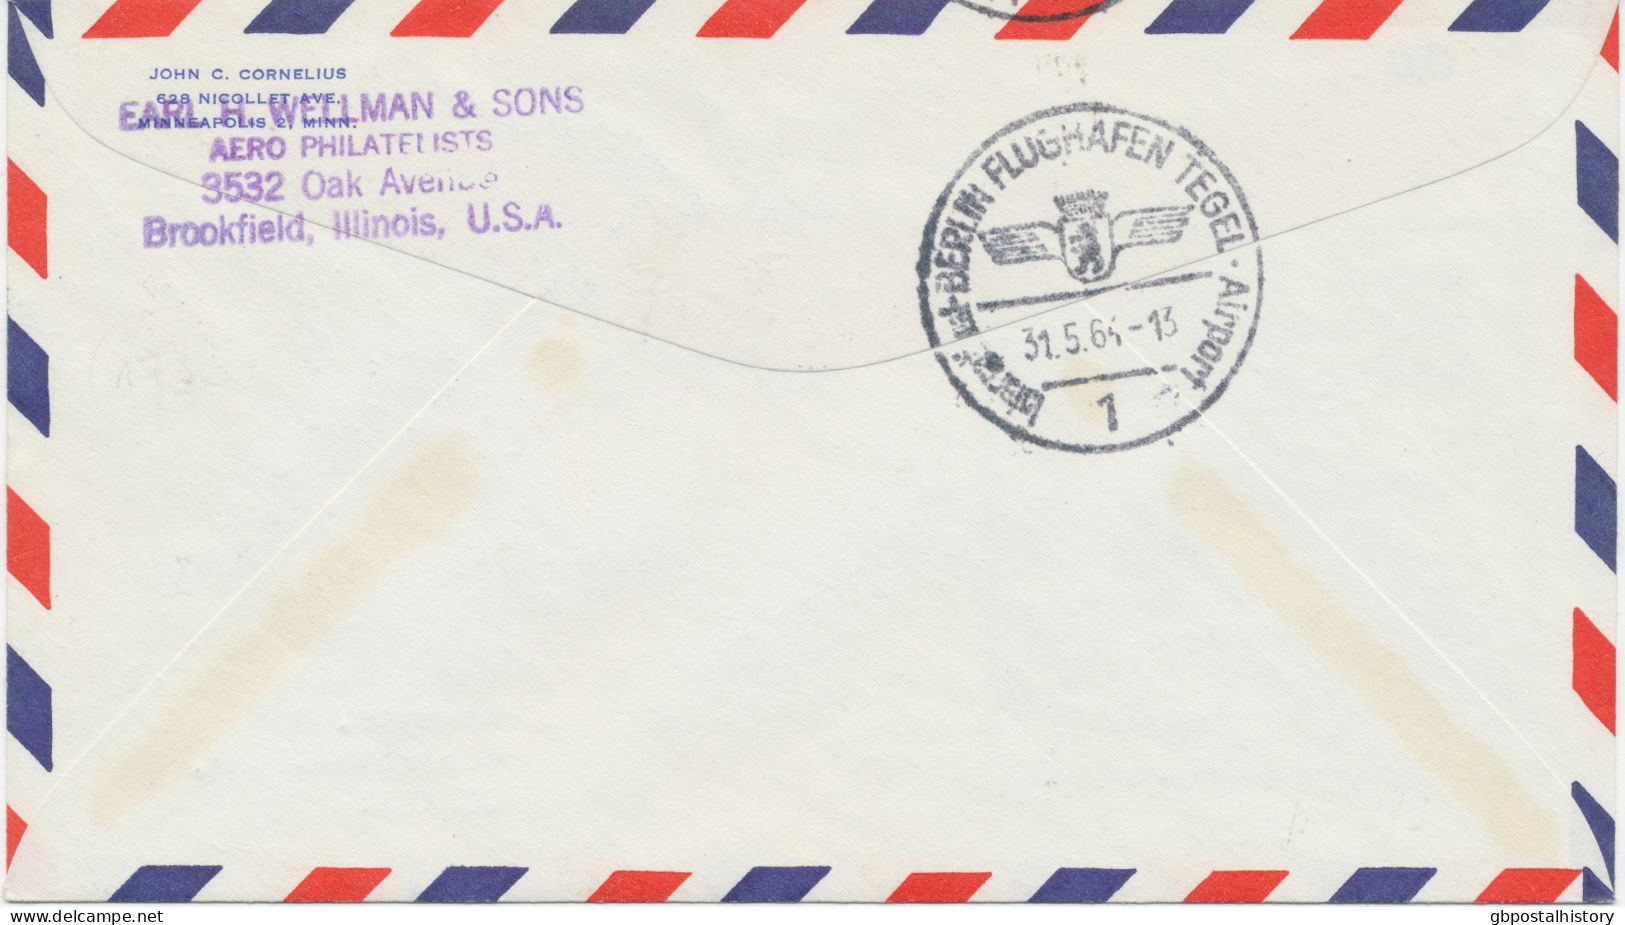 VEREINTE NATIONEN NEW YORK 1964 Erstflug Pan American Airlines First Direct Jet Air Mail Service „VEREINTE NATIONEN NY - - Luftpost